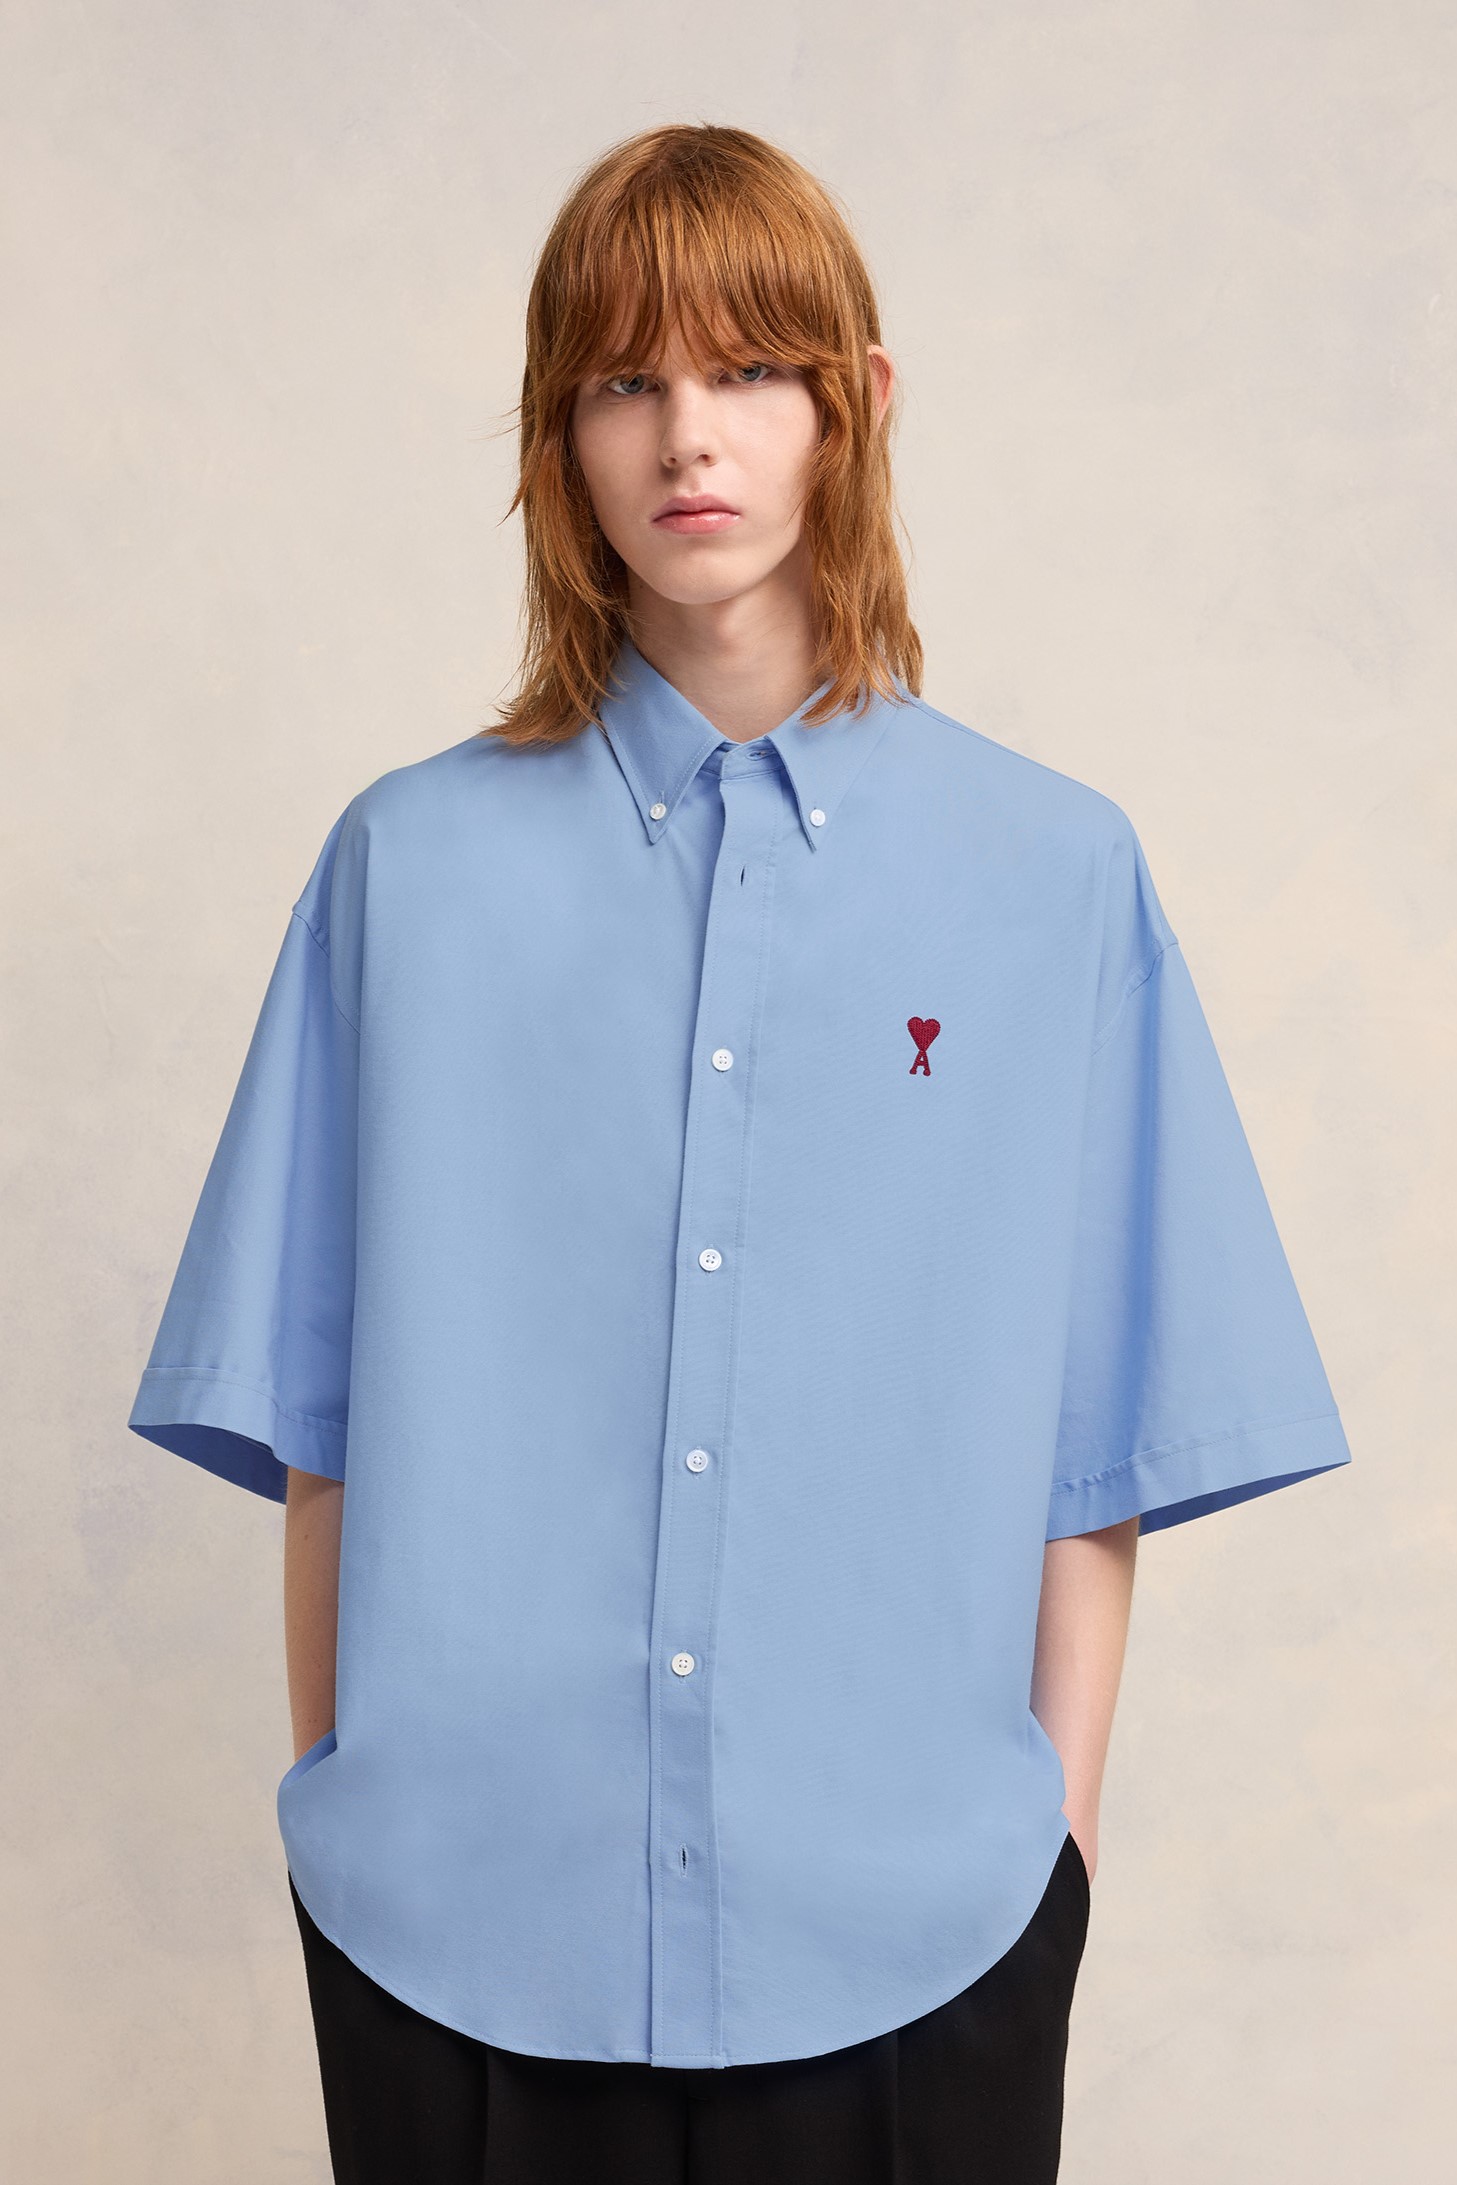 AMI PARIS de Coeur Boxy Fit Short Sleeve Shirt in Cashmere Blue XL